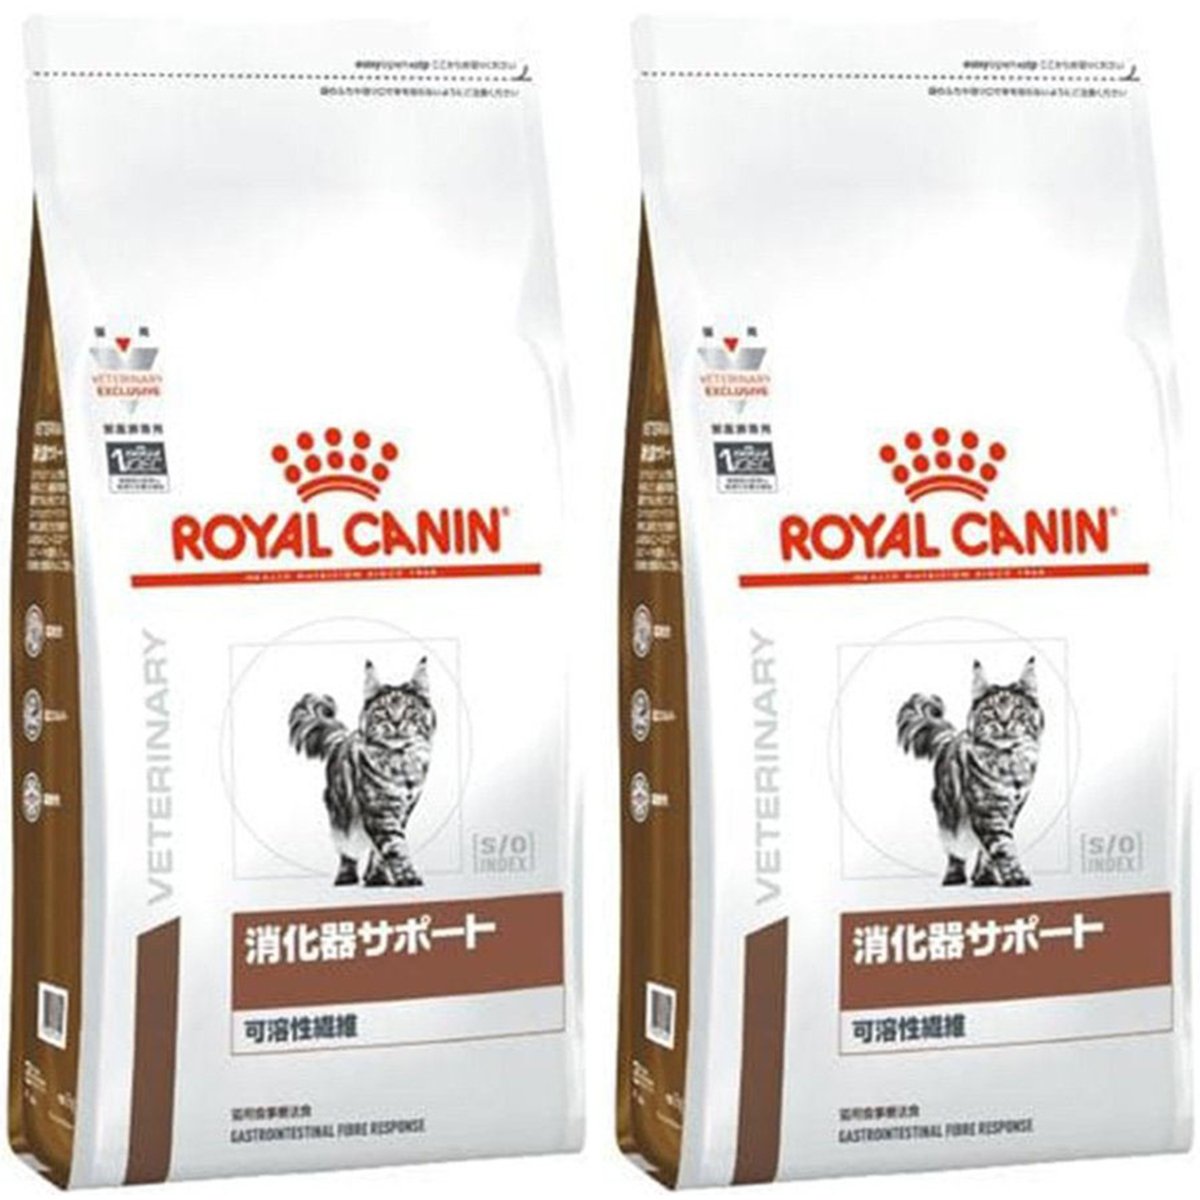 オープニング 消化器サポート 可溶性繊維 4kg ロイヤルカナン 猫用療法食